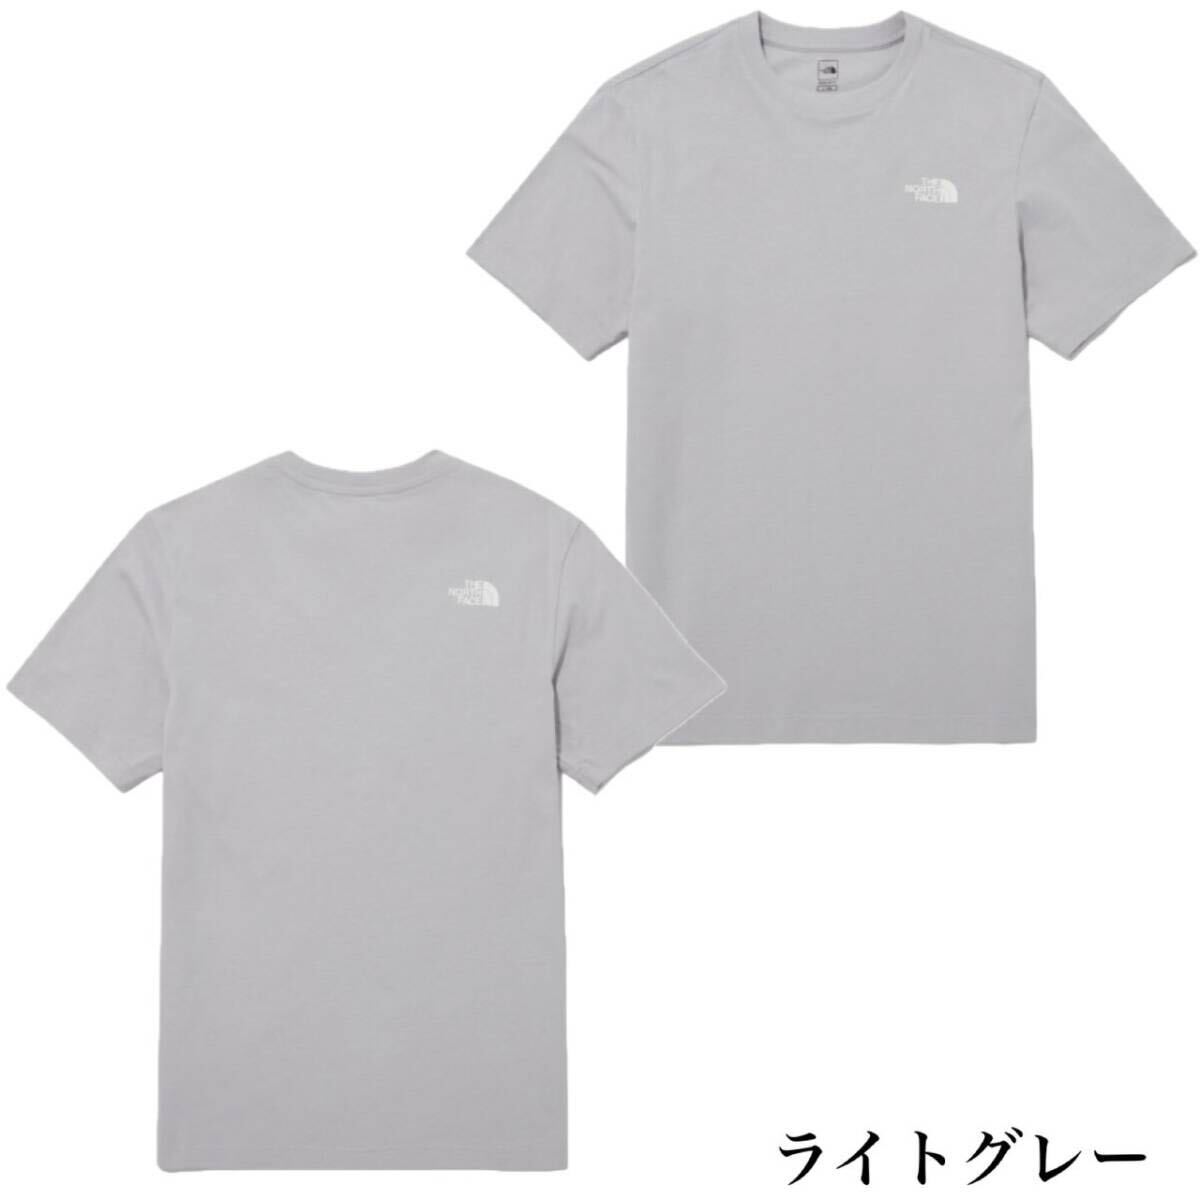 ザ ノースフェイス Tシャツ NT7U ライトグレー XLサイズ コットン素材 クルーネック シンプルロゴ THE NORTH FACE COTTON S/S TEE 新品の画像3